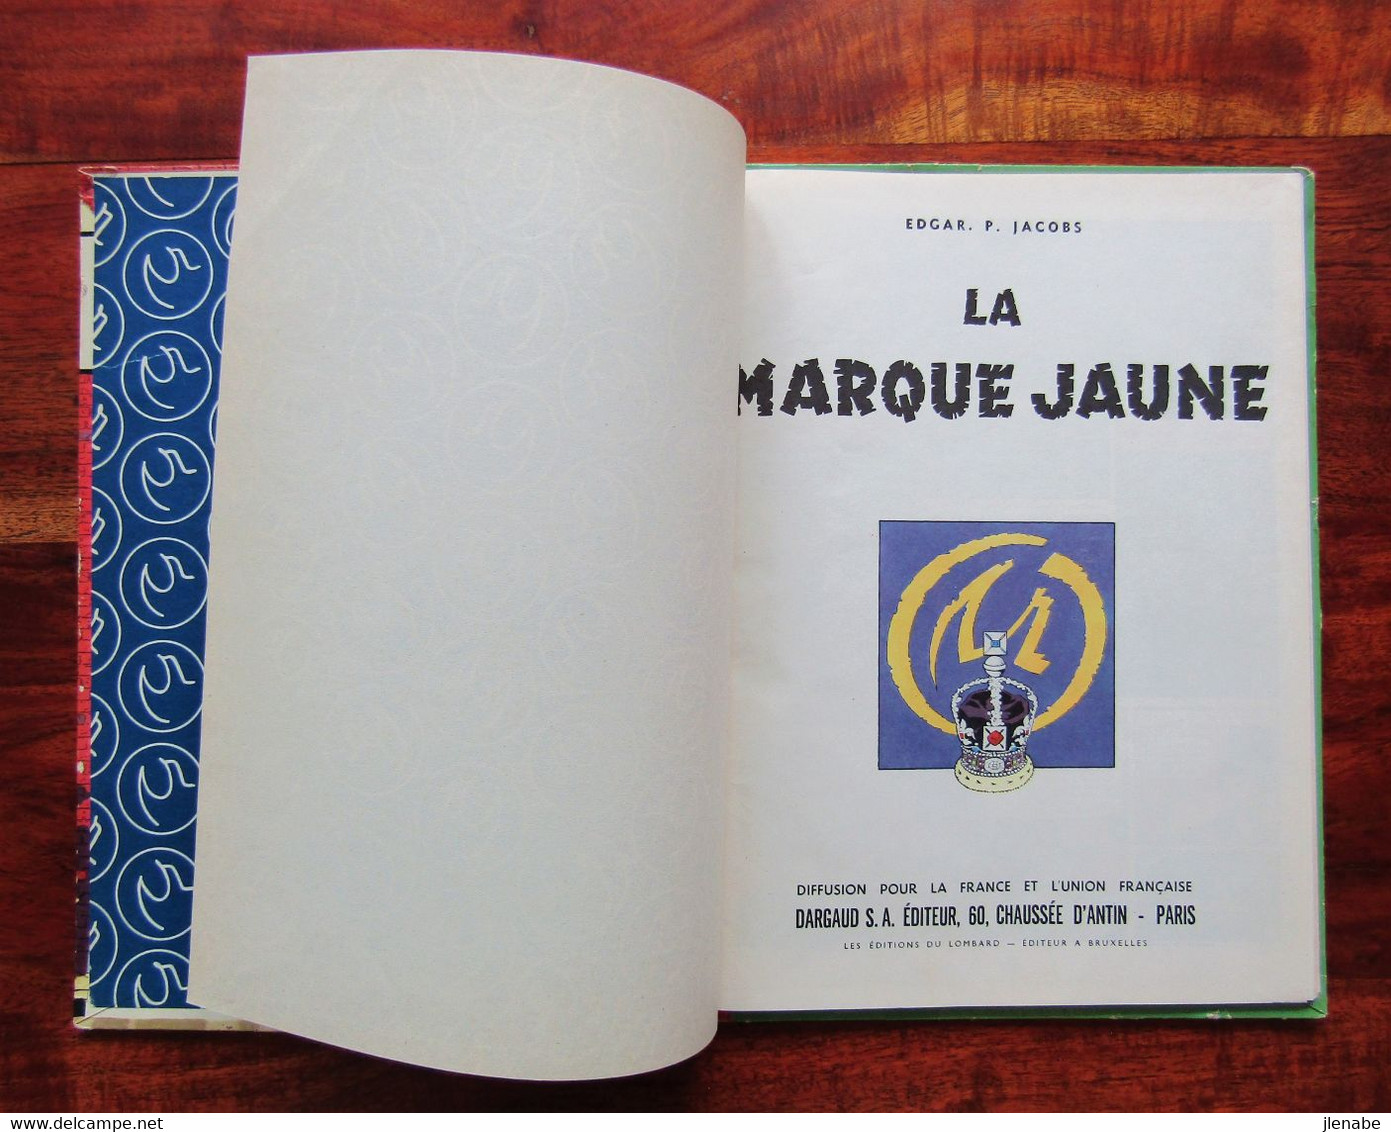 Blake et Mortimer La marque Jaune Edition Originale Française de 1956 par Edgard P JACOBS